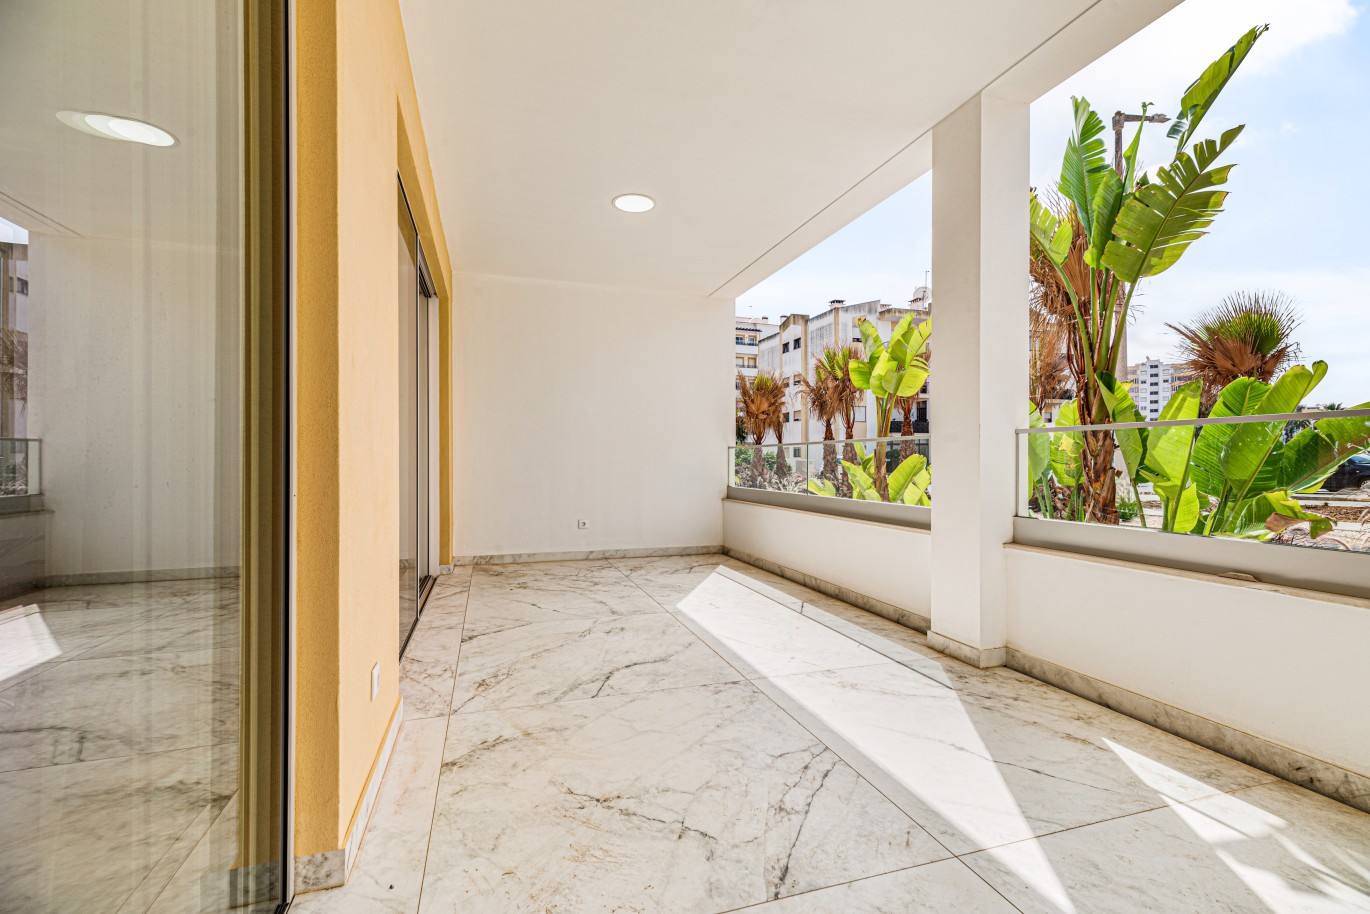 Apartamento, com terraço, para venda, em Lagos, Algarve_238151